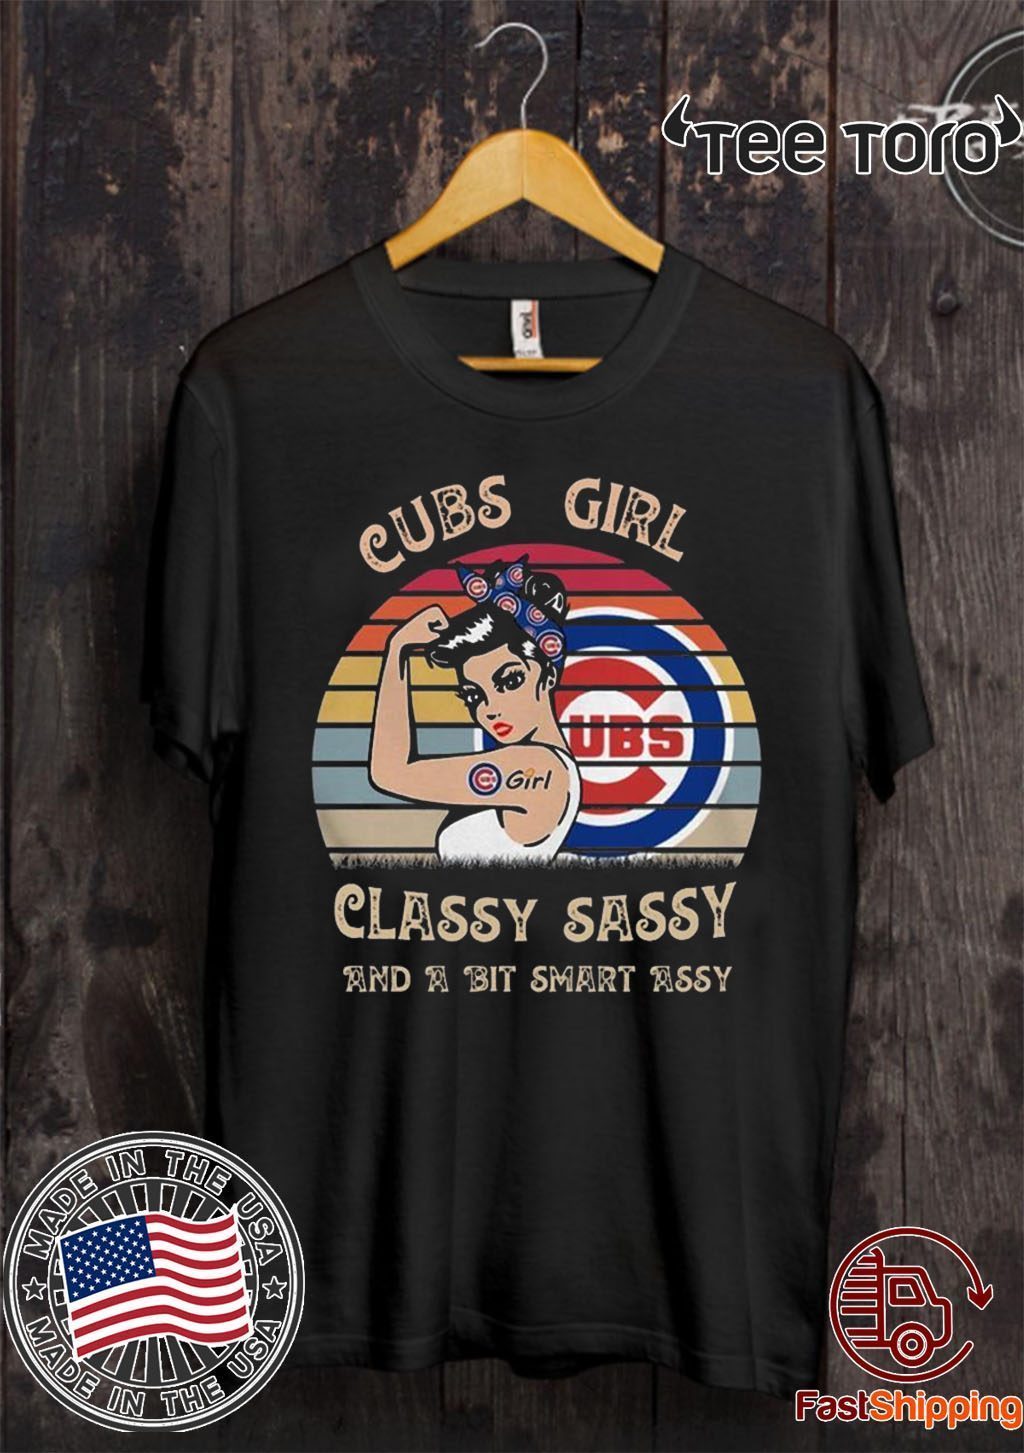 girls chicago cubs shirt